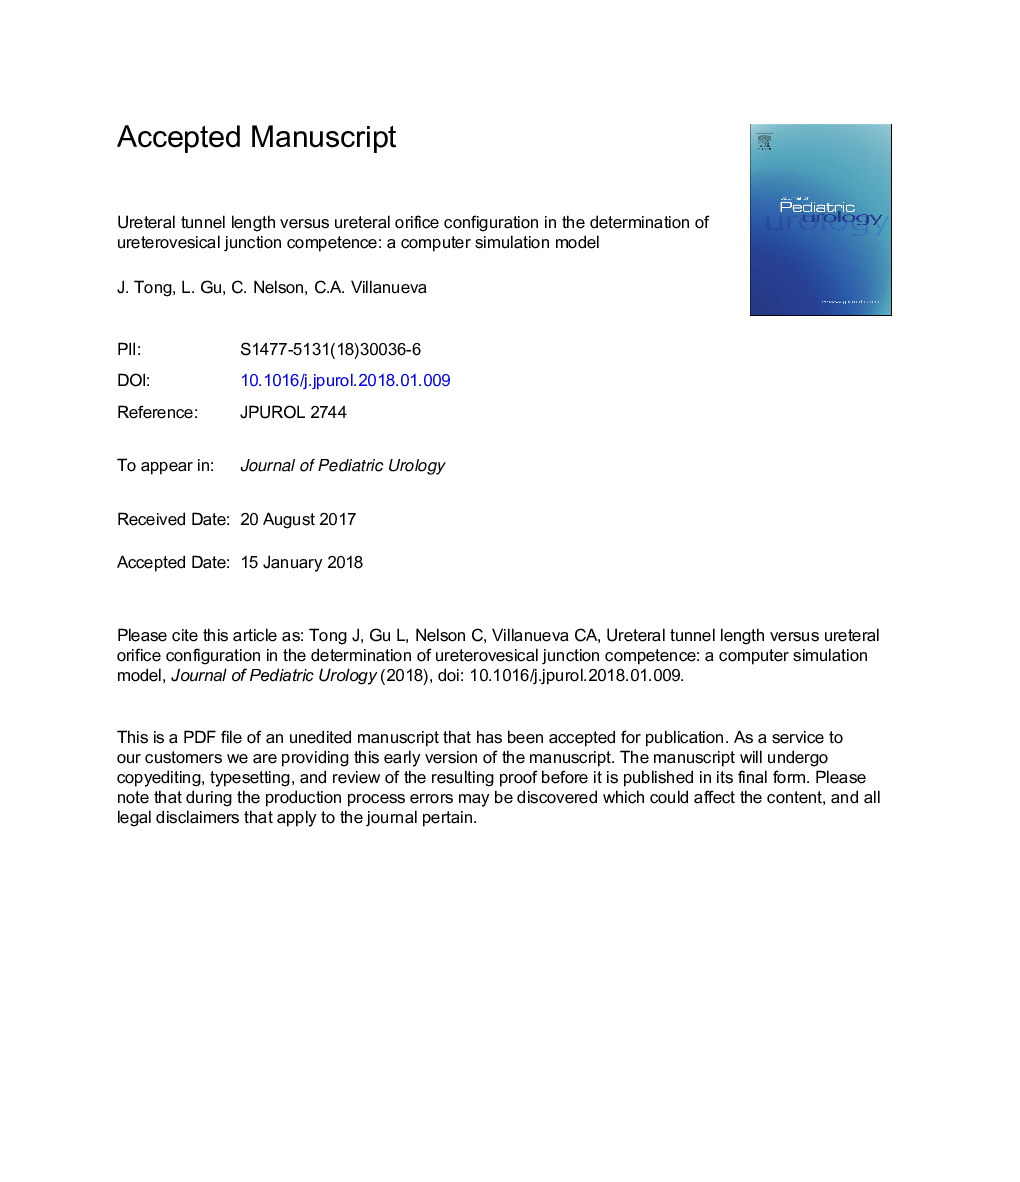 طول تونل مدفوع و پیکربندی سوراخهای مدفوع در تعیین شکست اتصال یورتوئیدی: یک مدل شبیه سازی کامپیوتری 